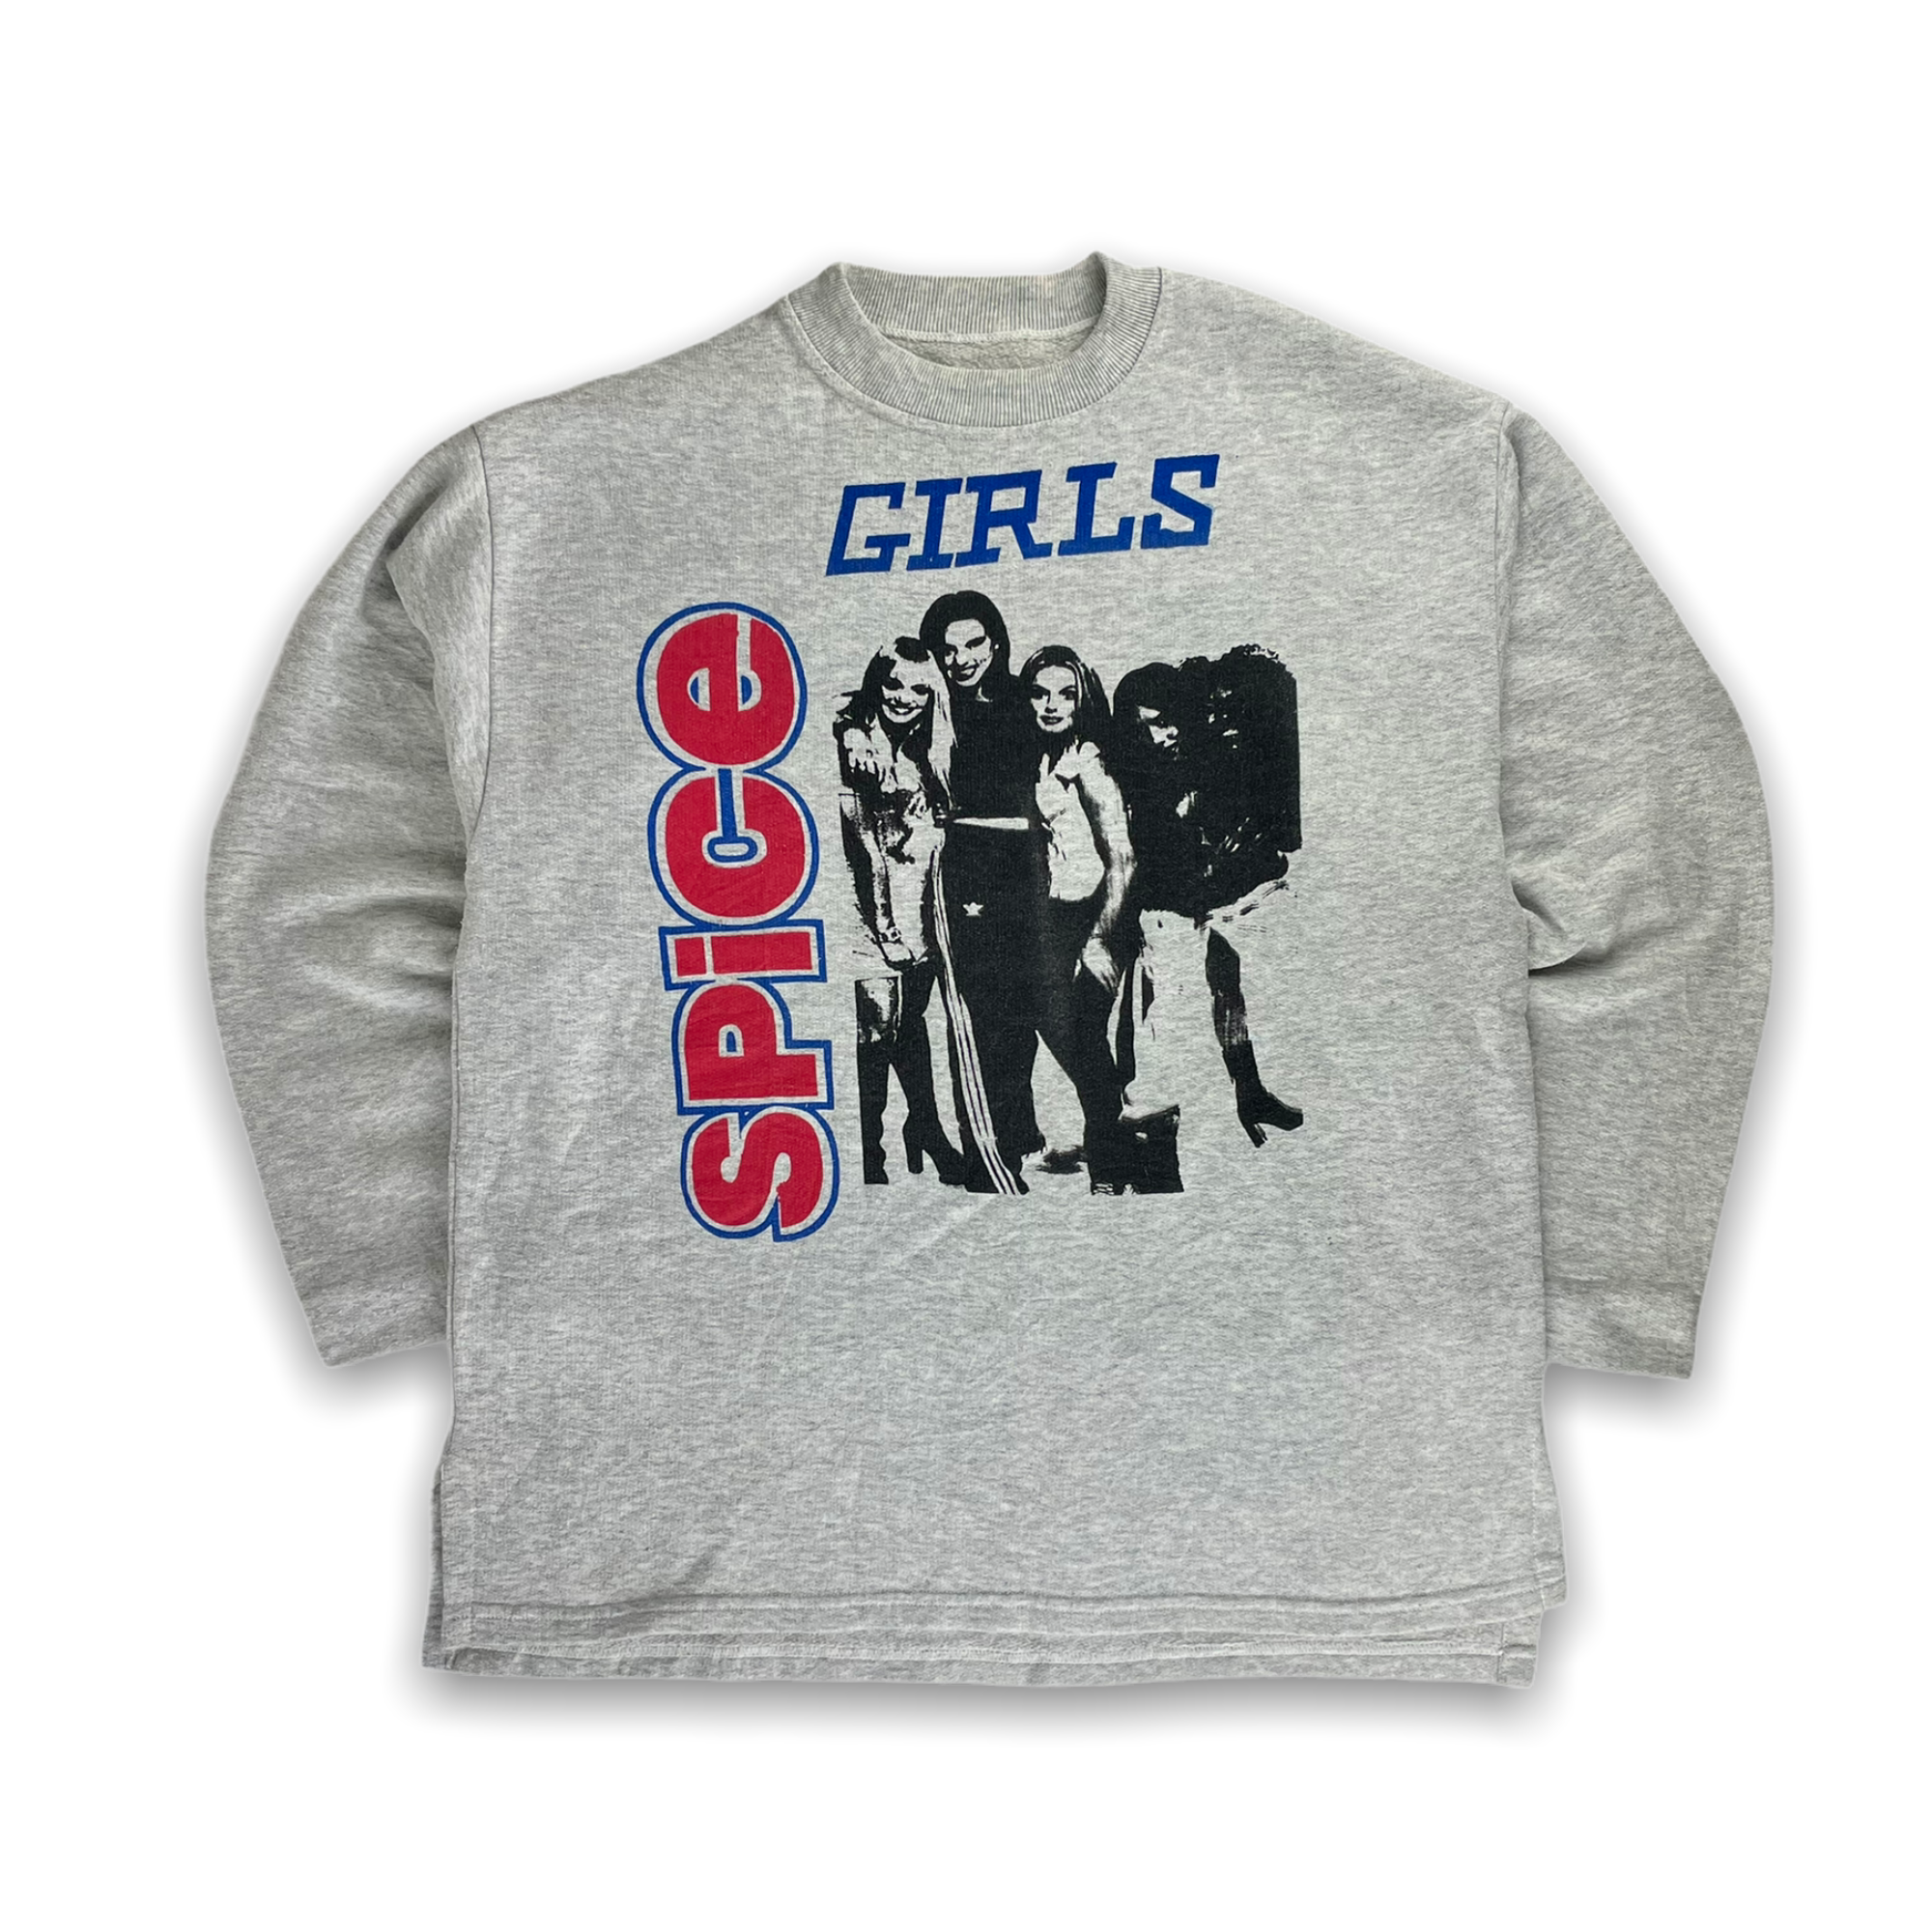 Vintage 90s Spice Girls Sweatshirt - Restorecph